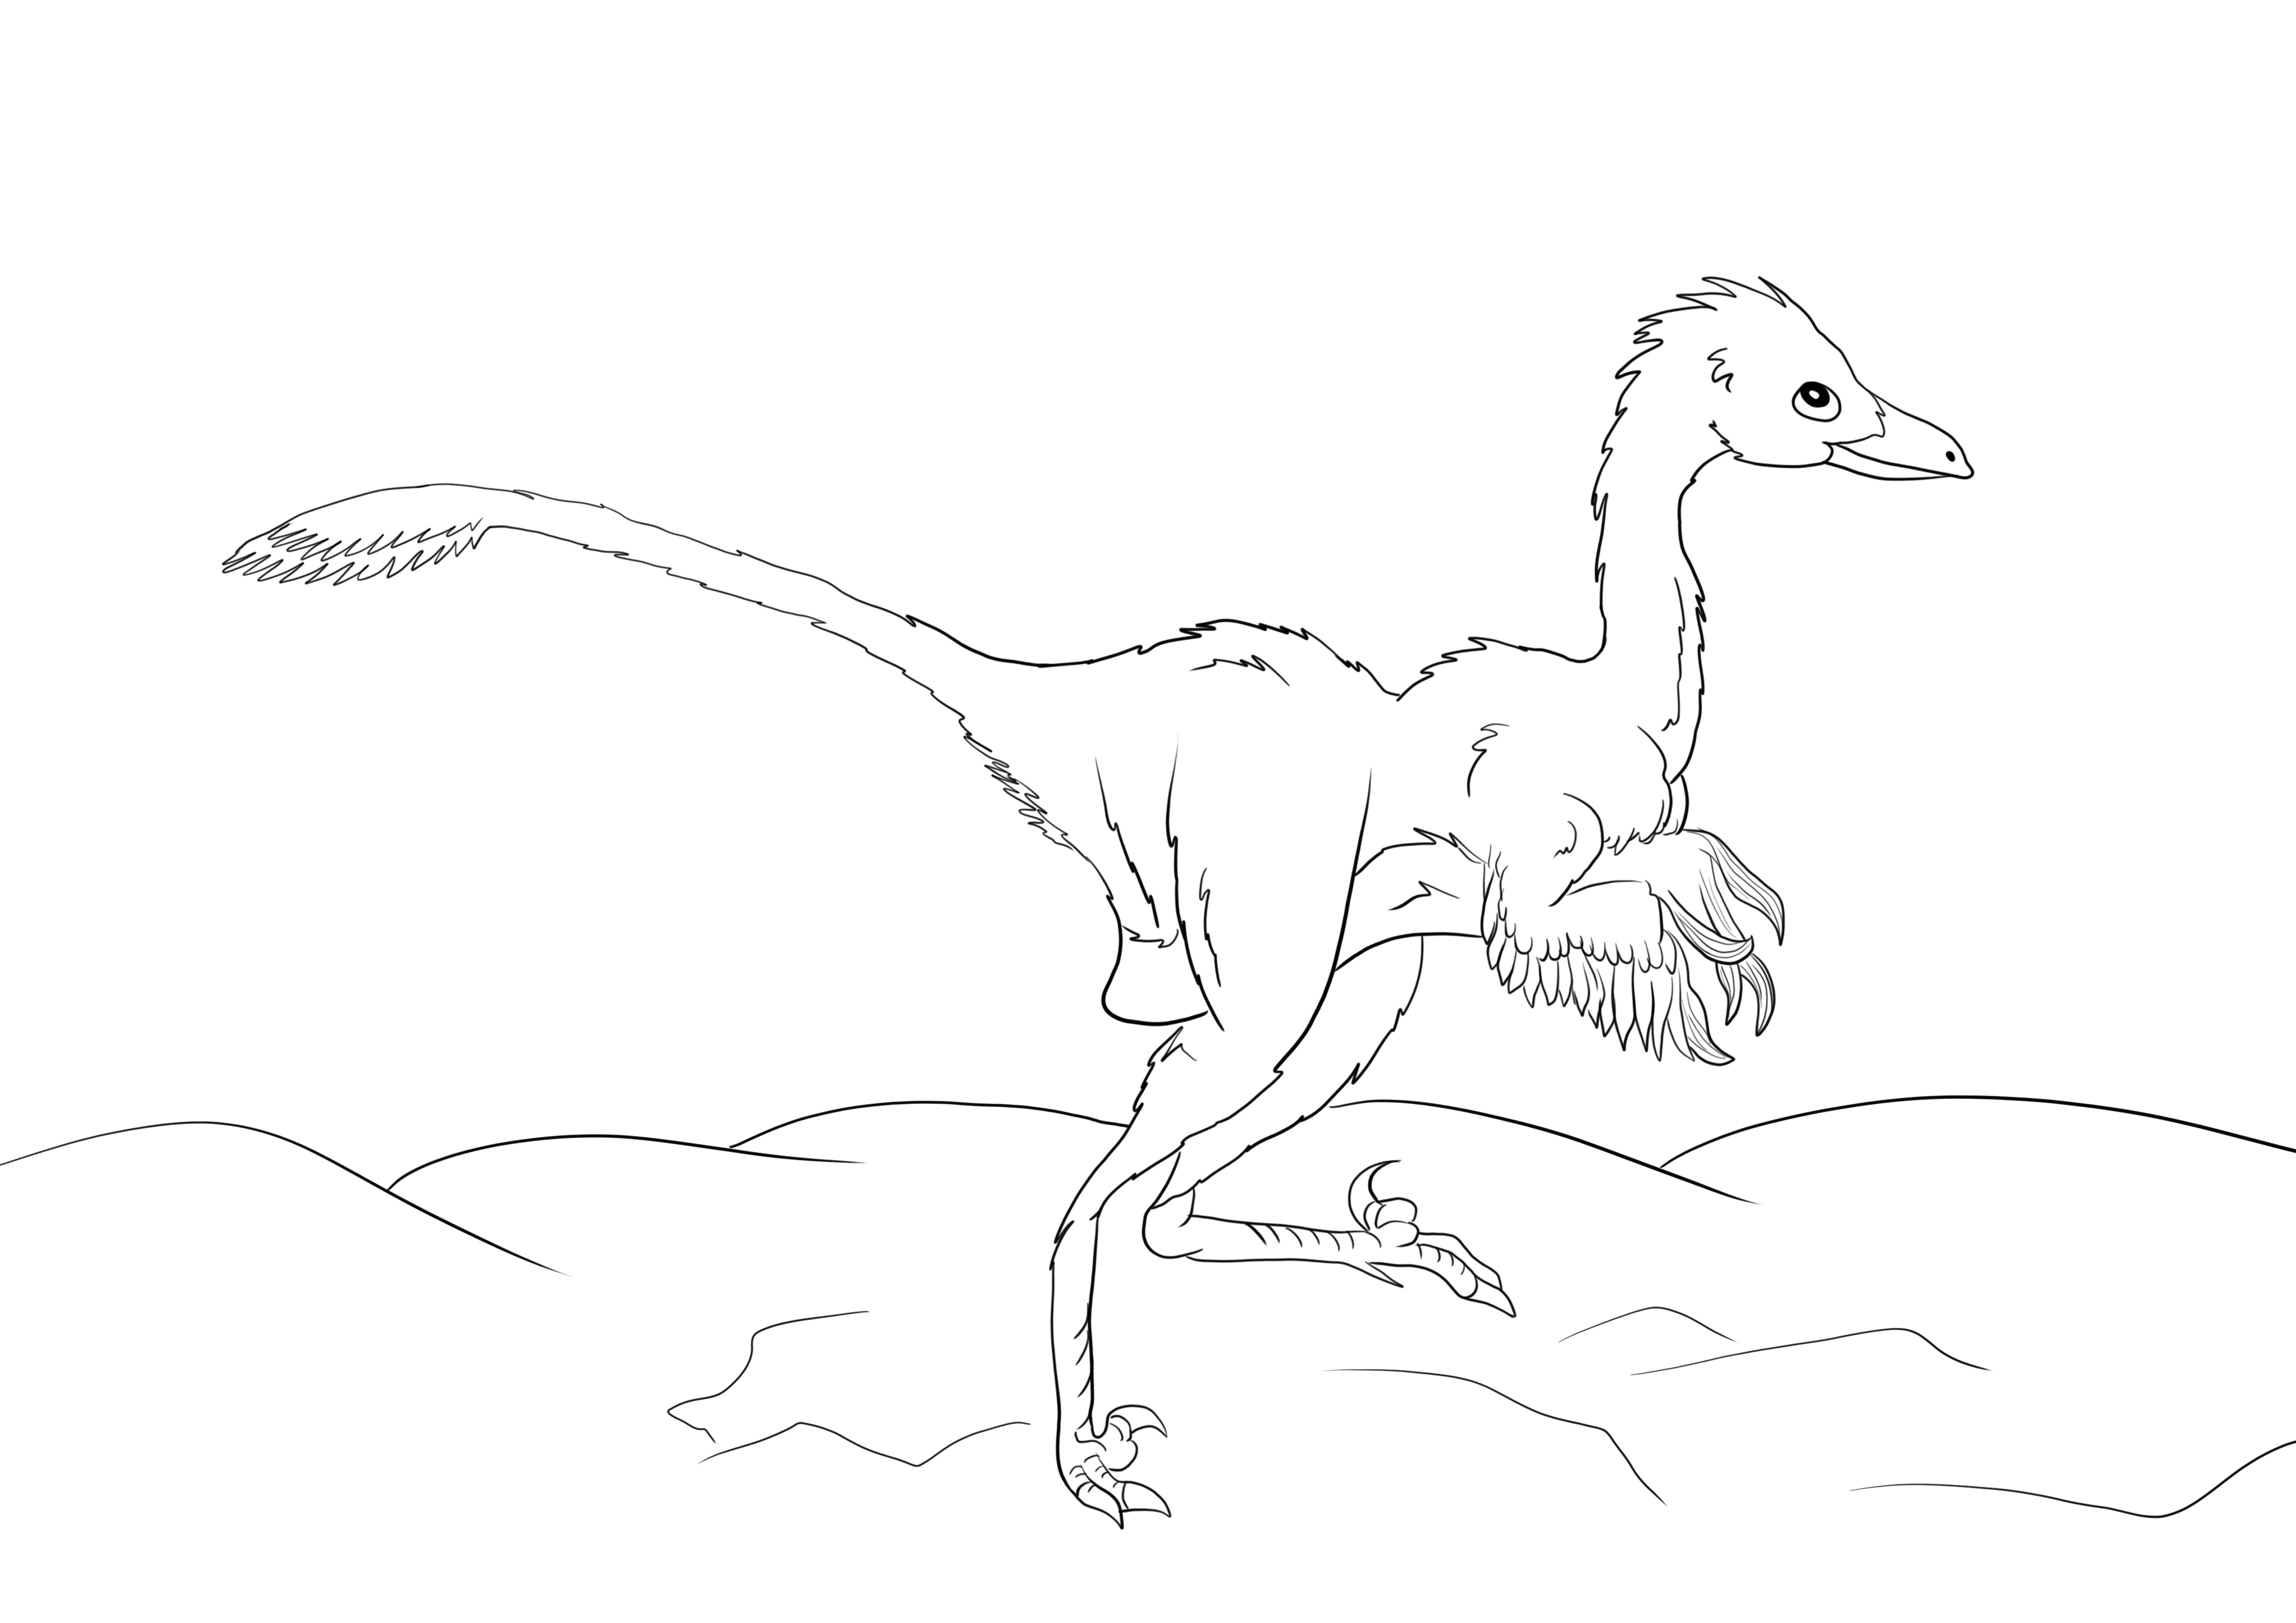 Eine kostenlose Malvorlage eines Troodon-Dinosauriers zum kostenlosen Ausdrucken